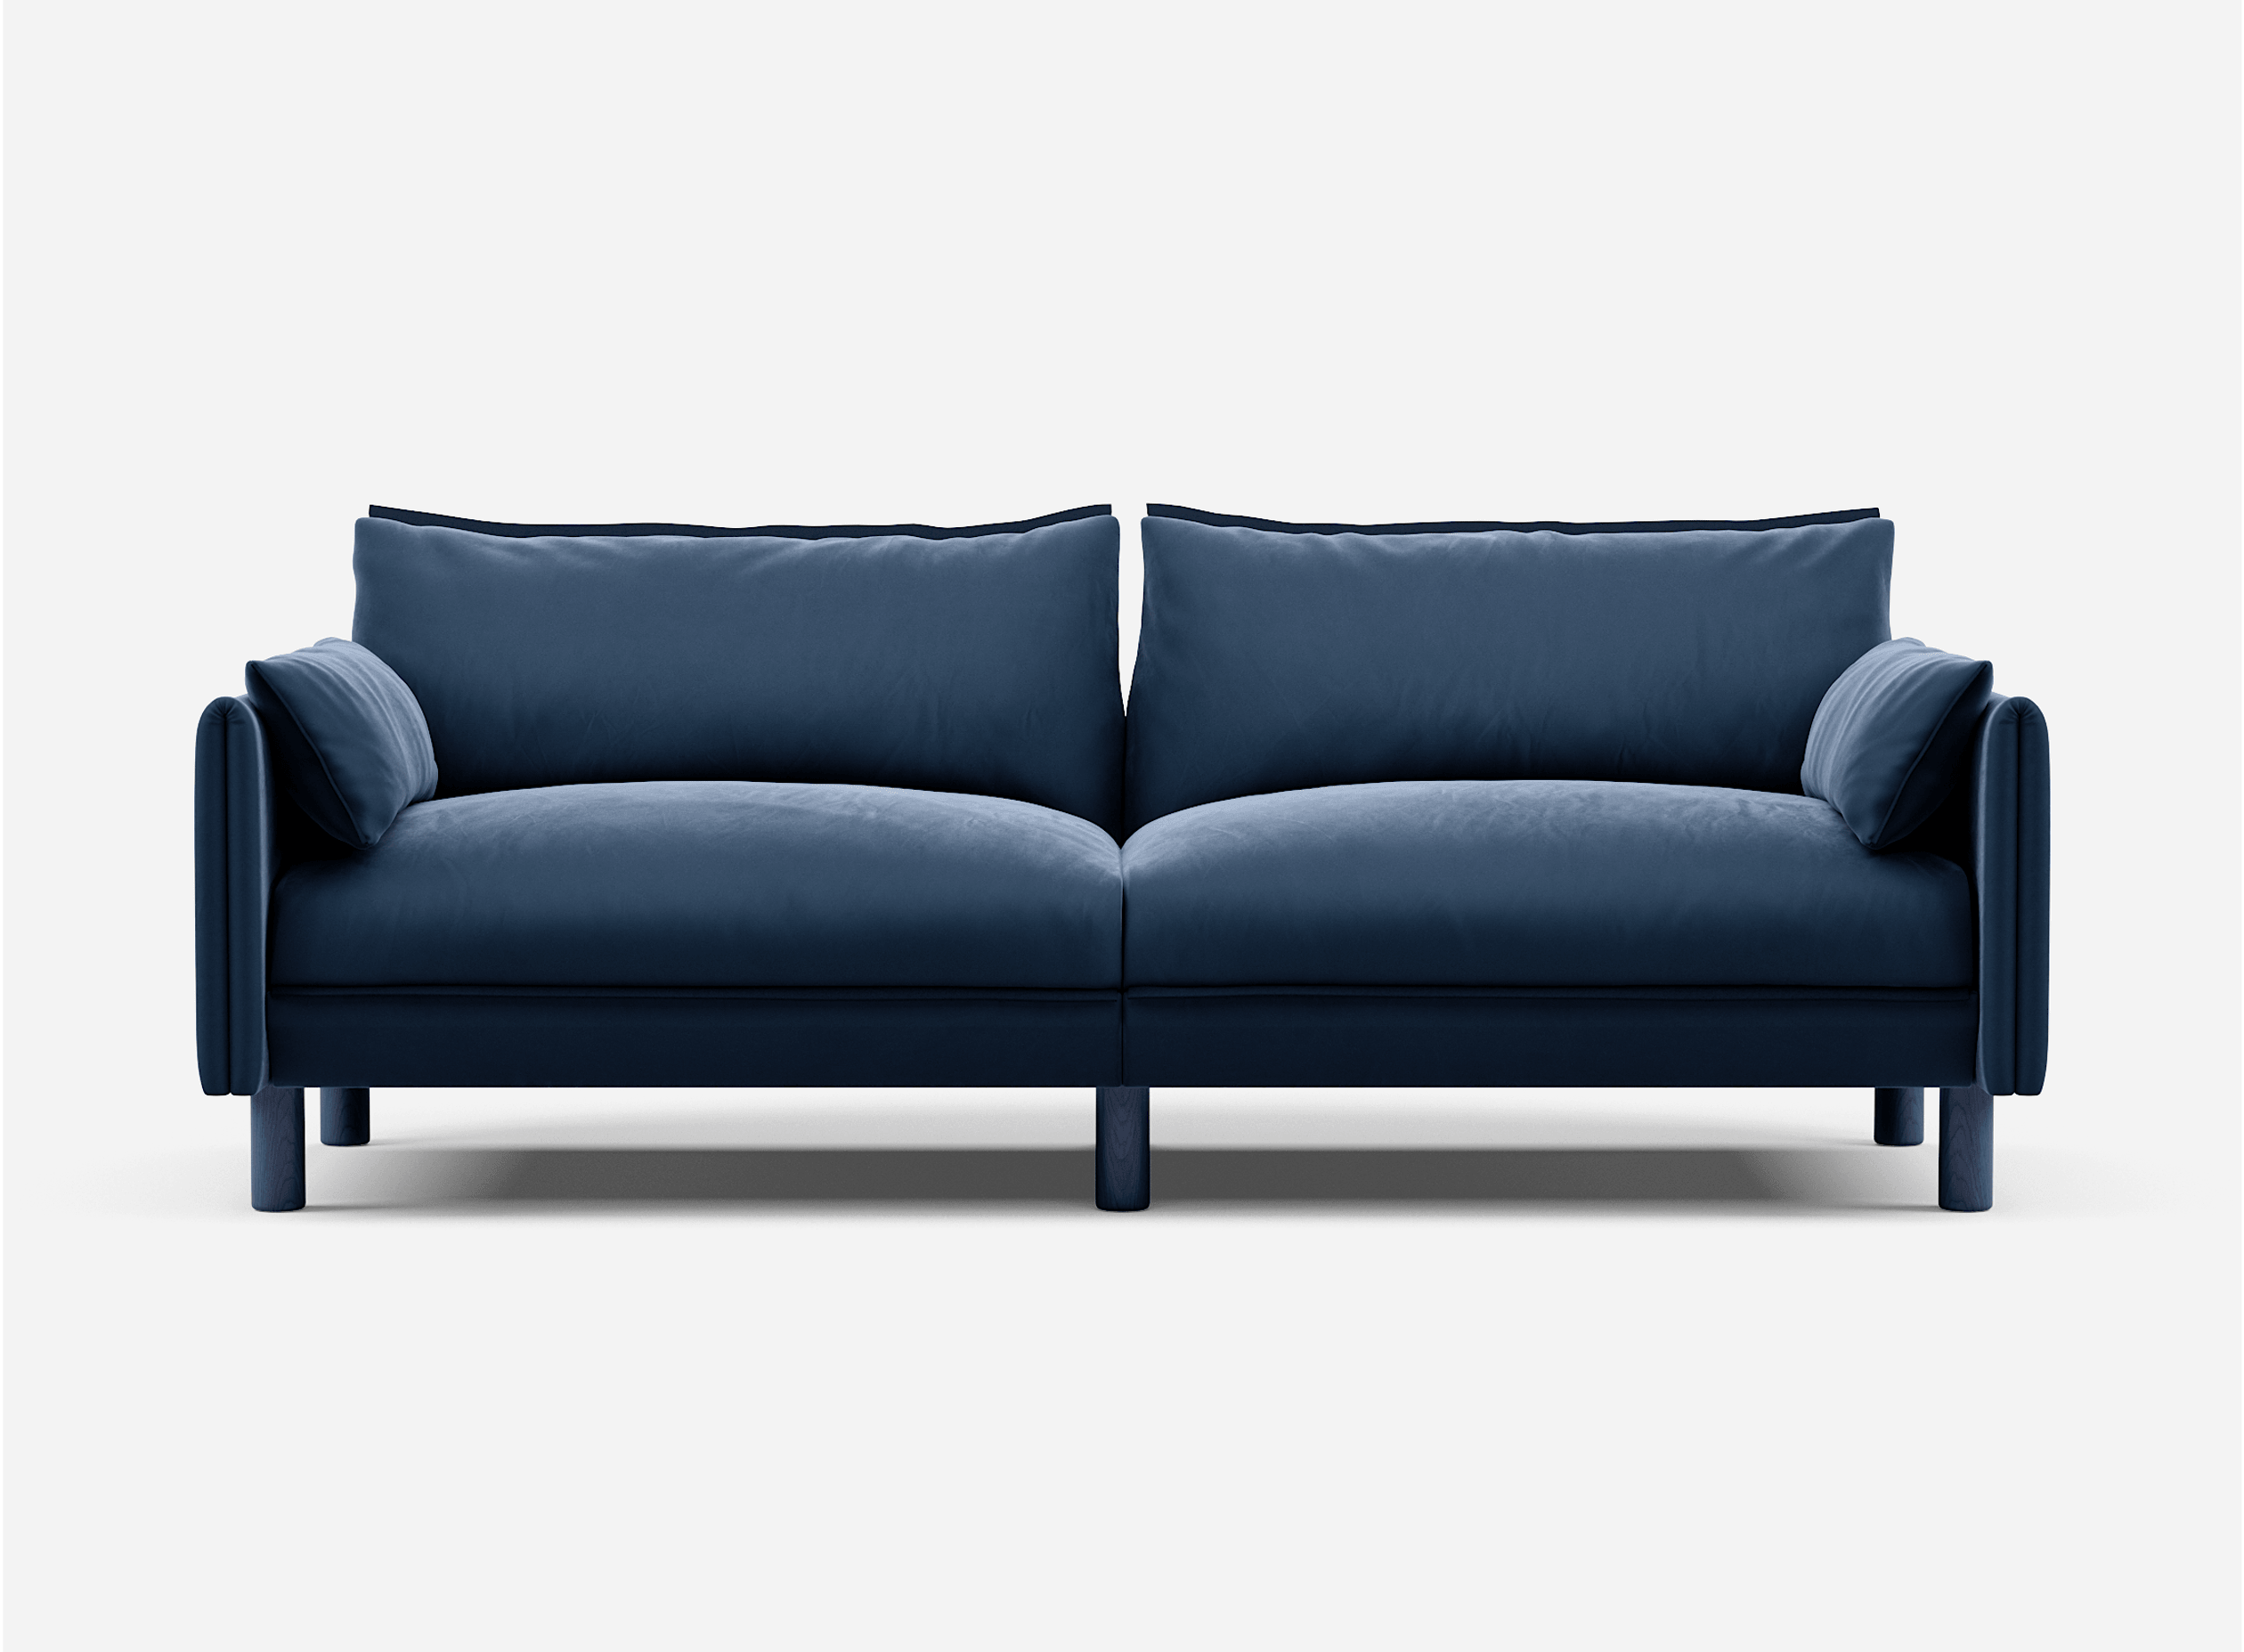 3 Seater Sofa | Velvet Midnight Blue - Cozmo @ Midnight Blue Velvet Jacket | Dark Blue Trim